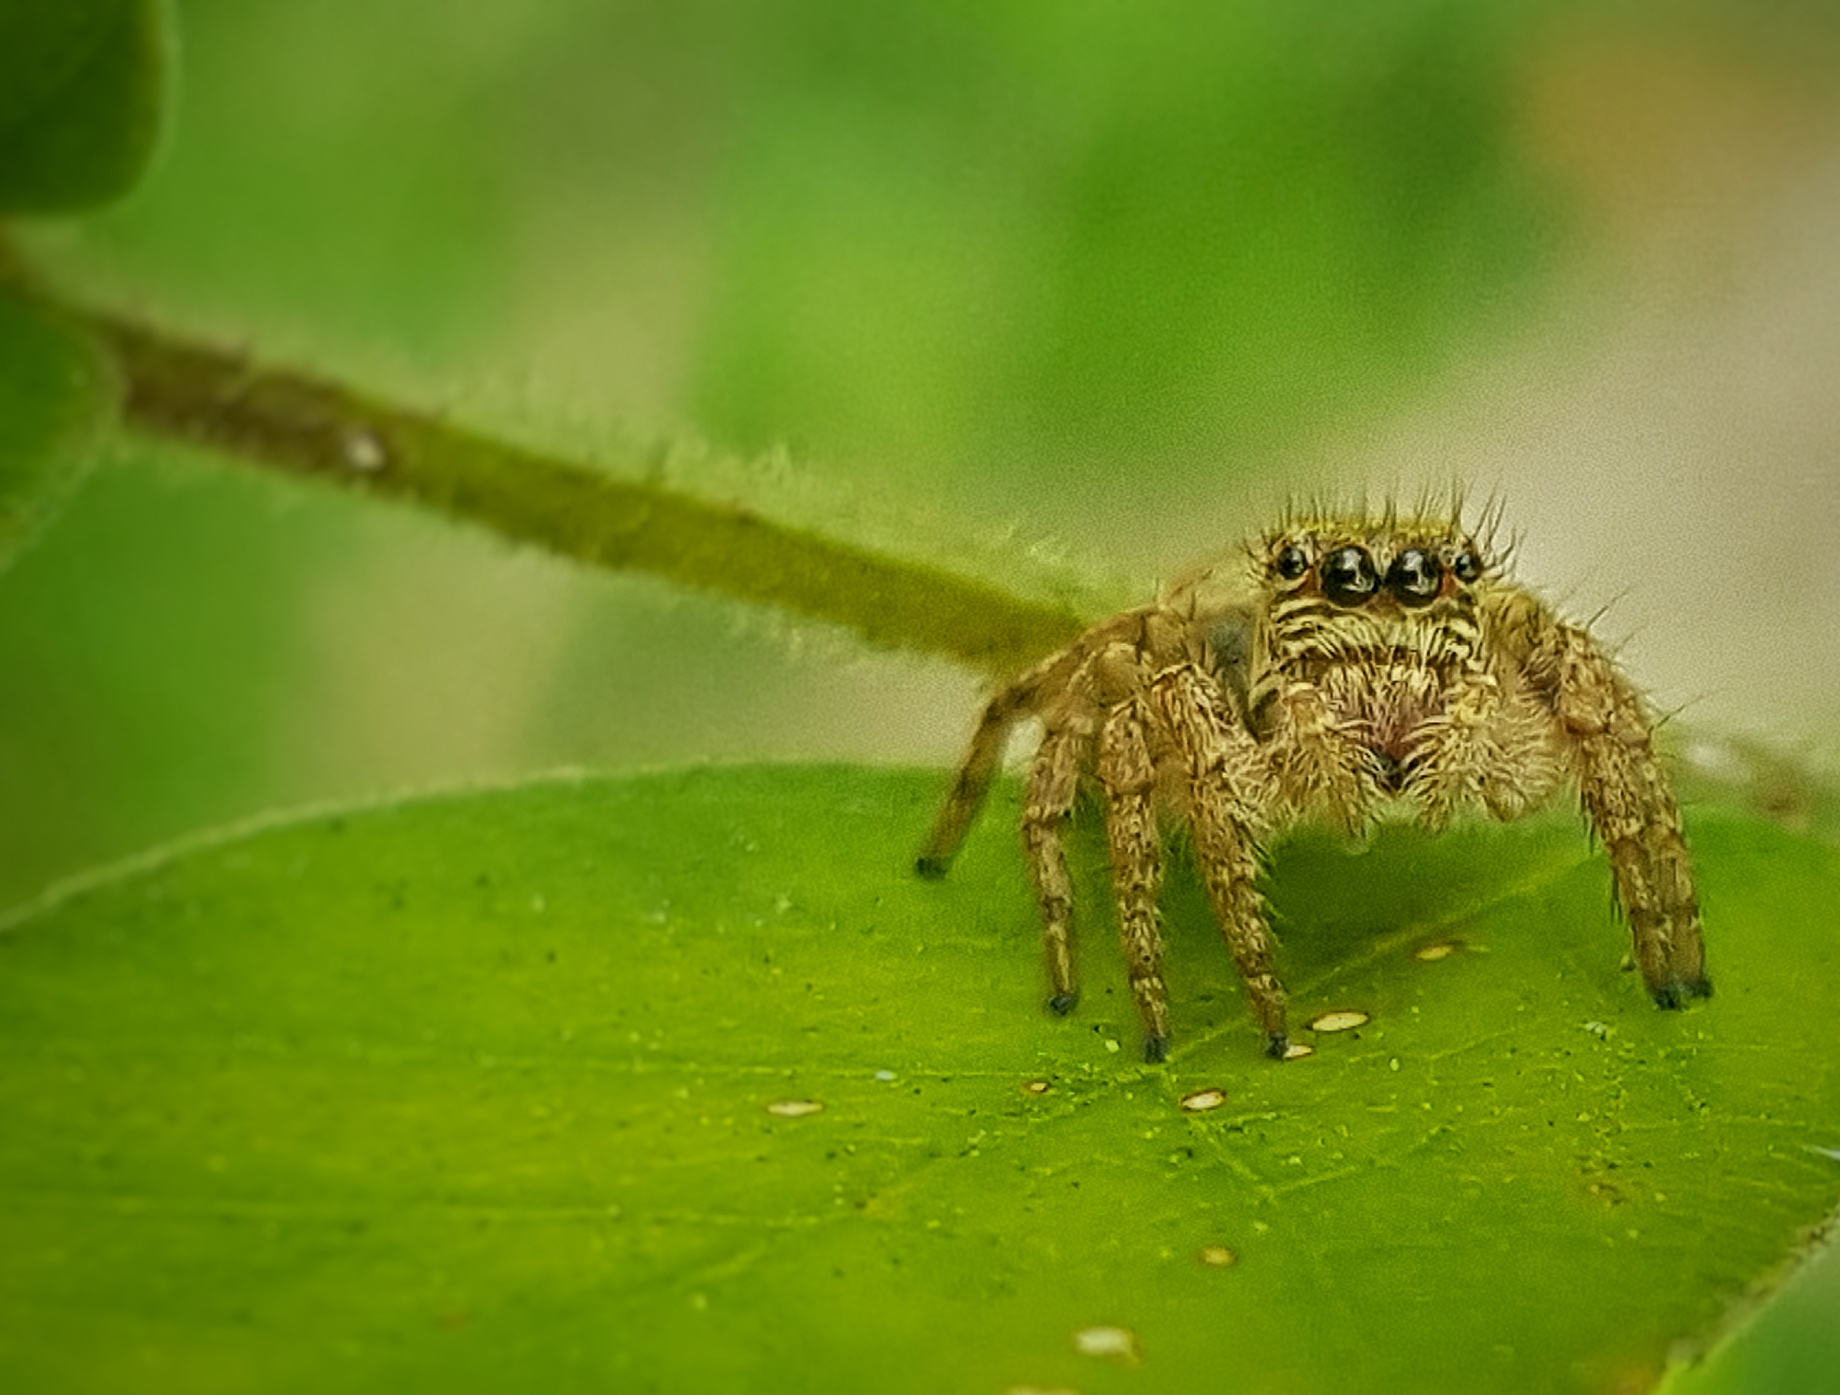 Golden jumping spider on light green leaf